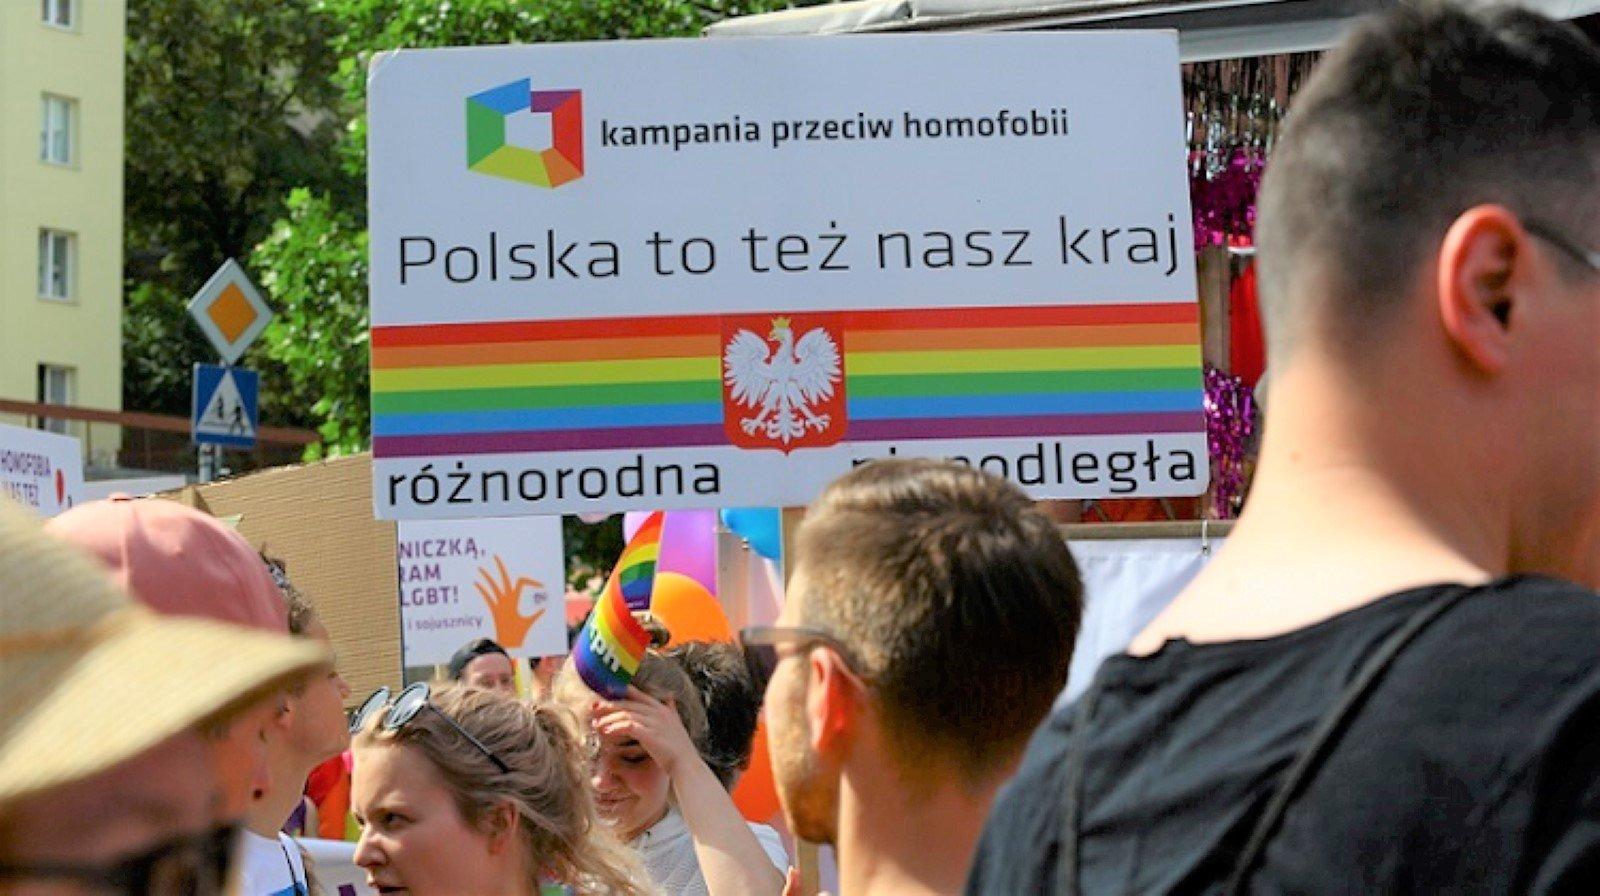 Młodzi ludzie na tle baneru "Polska to też nasz kraj" z kolorami tęczy